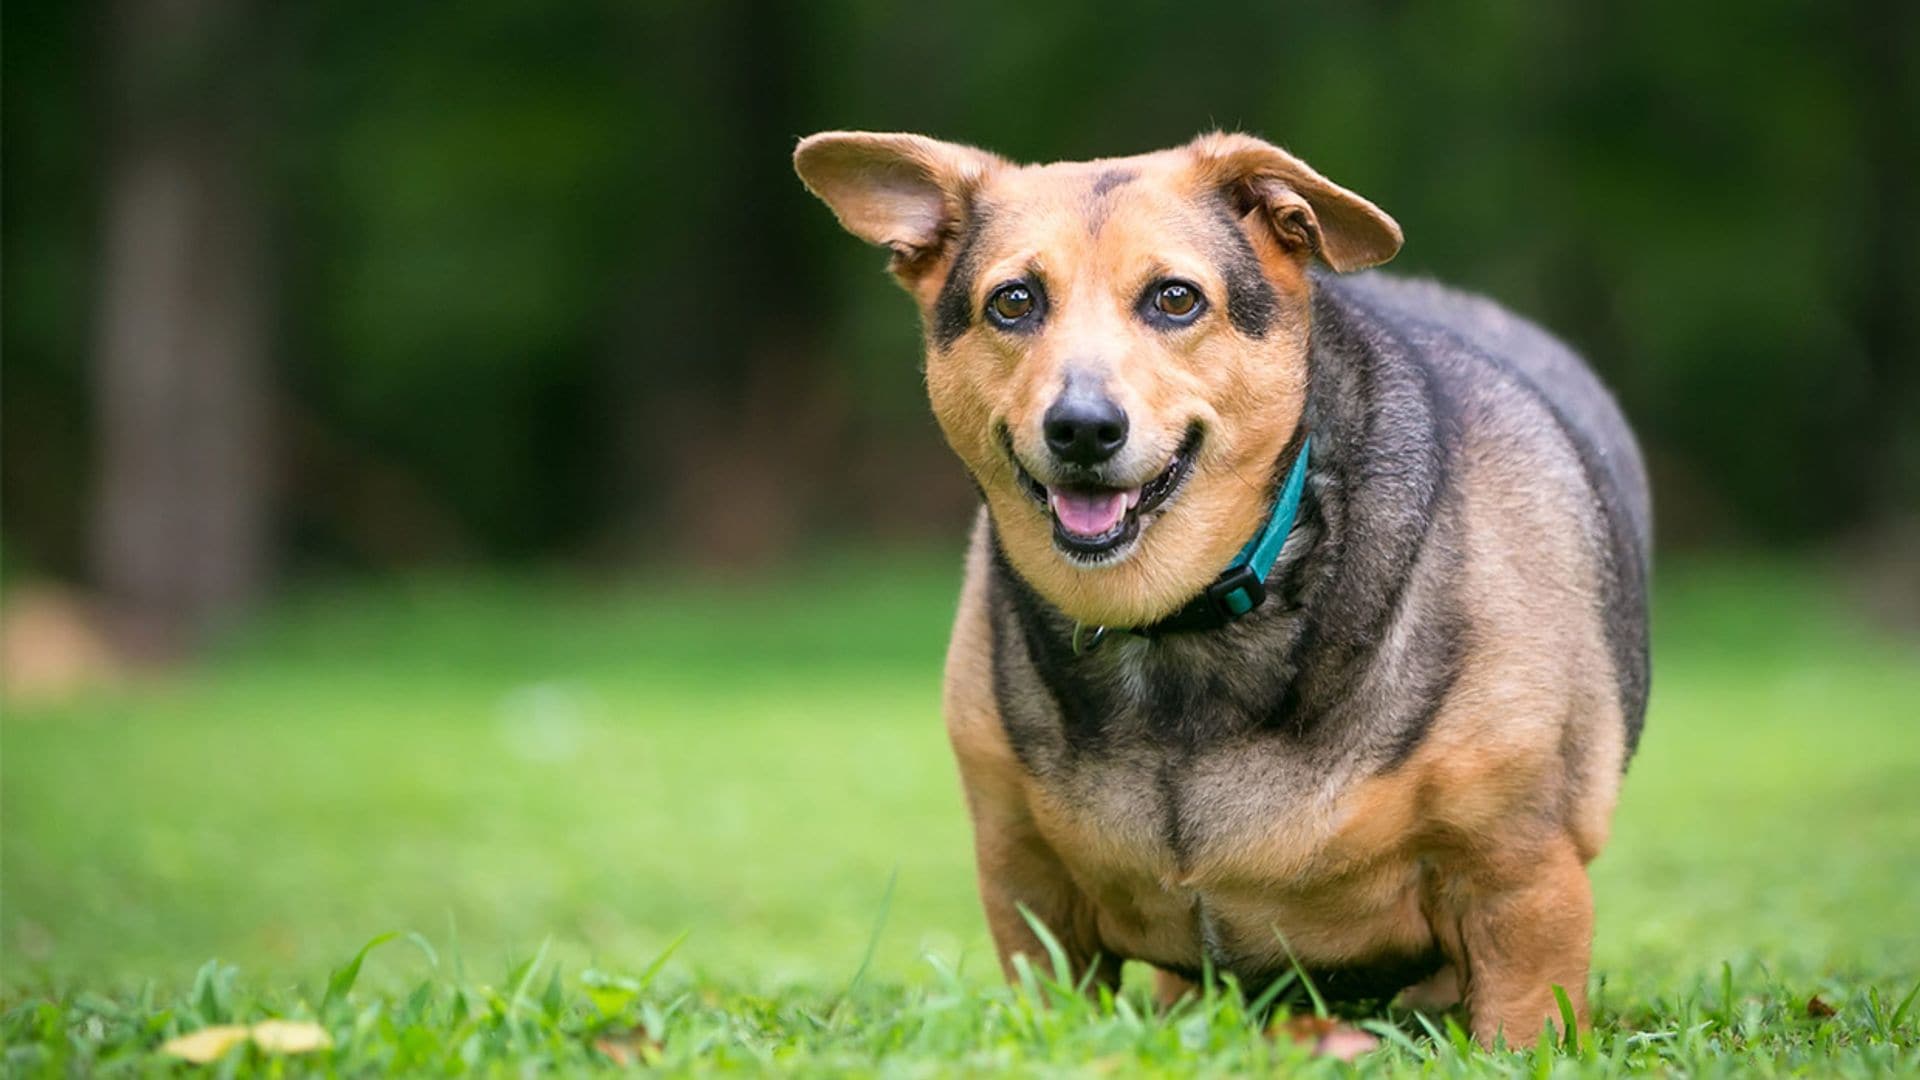 Perros con sobrepeso: enfermedades asociadas y formas de evitarlo